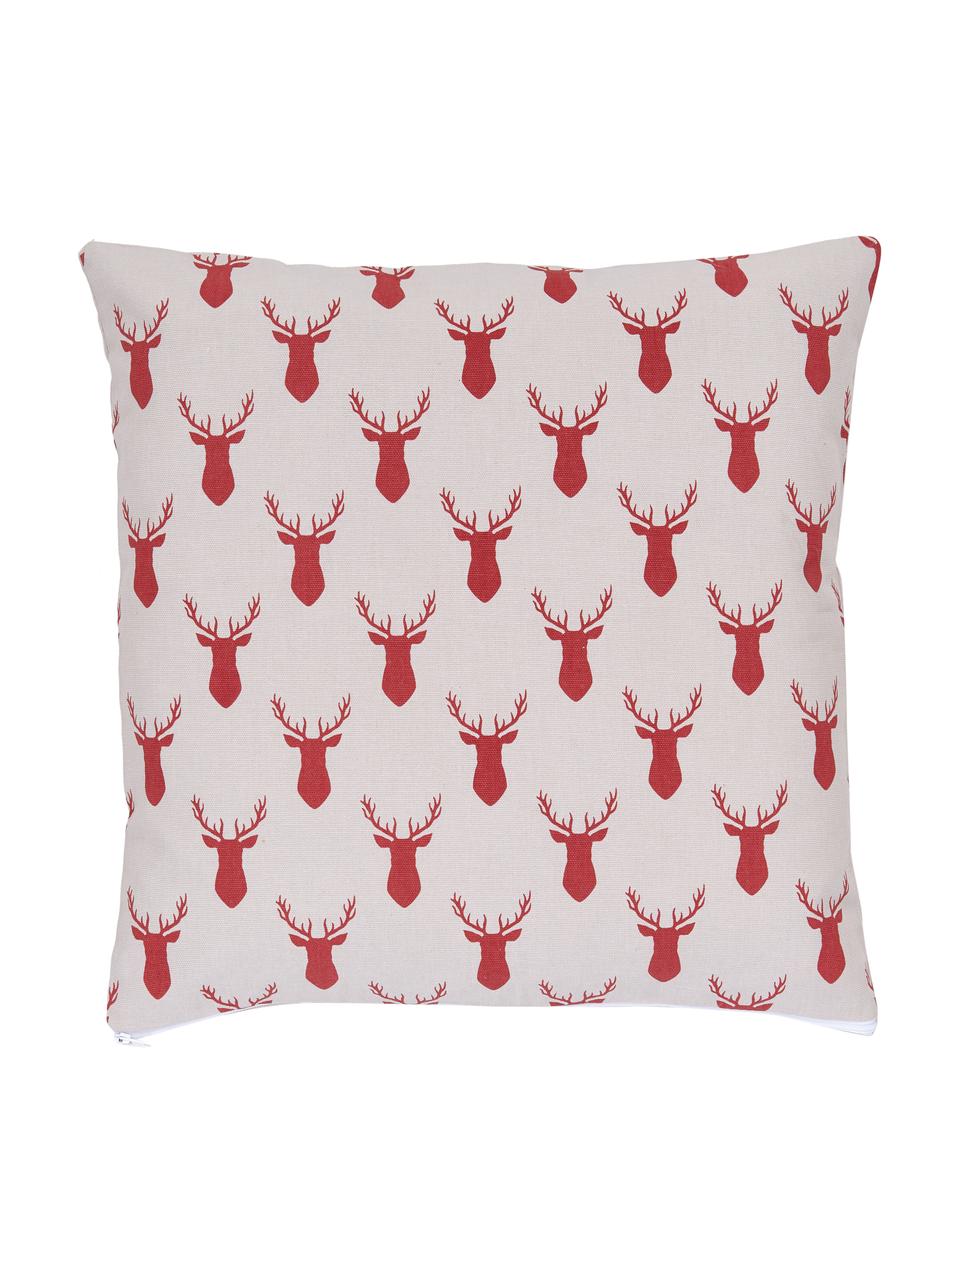 Dwustronna poszewka na poduszkę z bawełny Deer, 100% bawełna, Czerwony, S 45 x D 45 cm